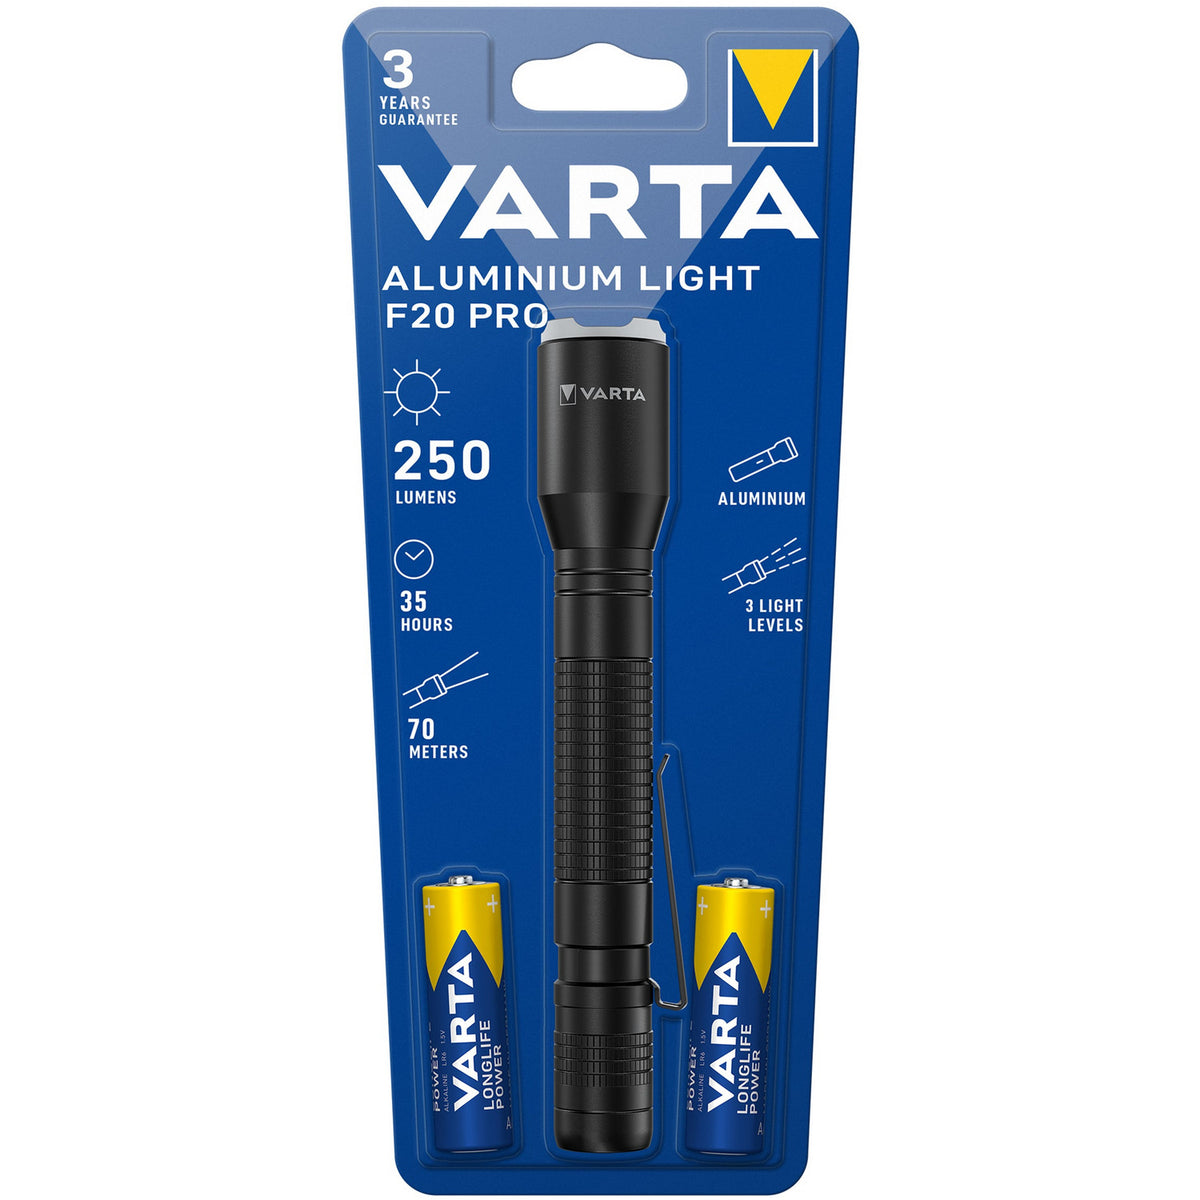 Torcia UV Light - VARTA VARTA in vendita su Bep's